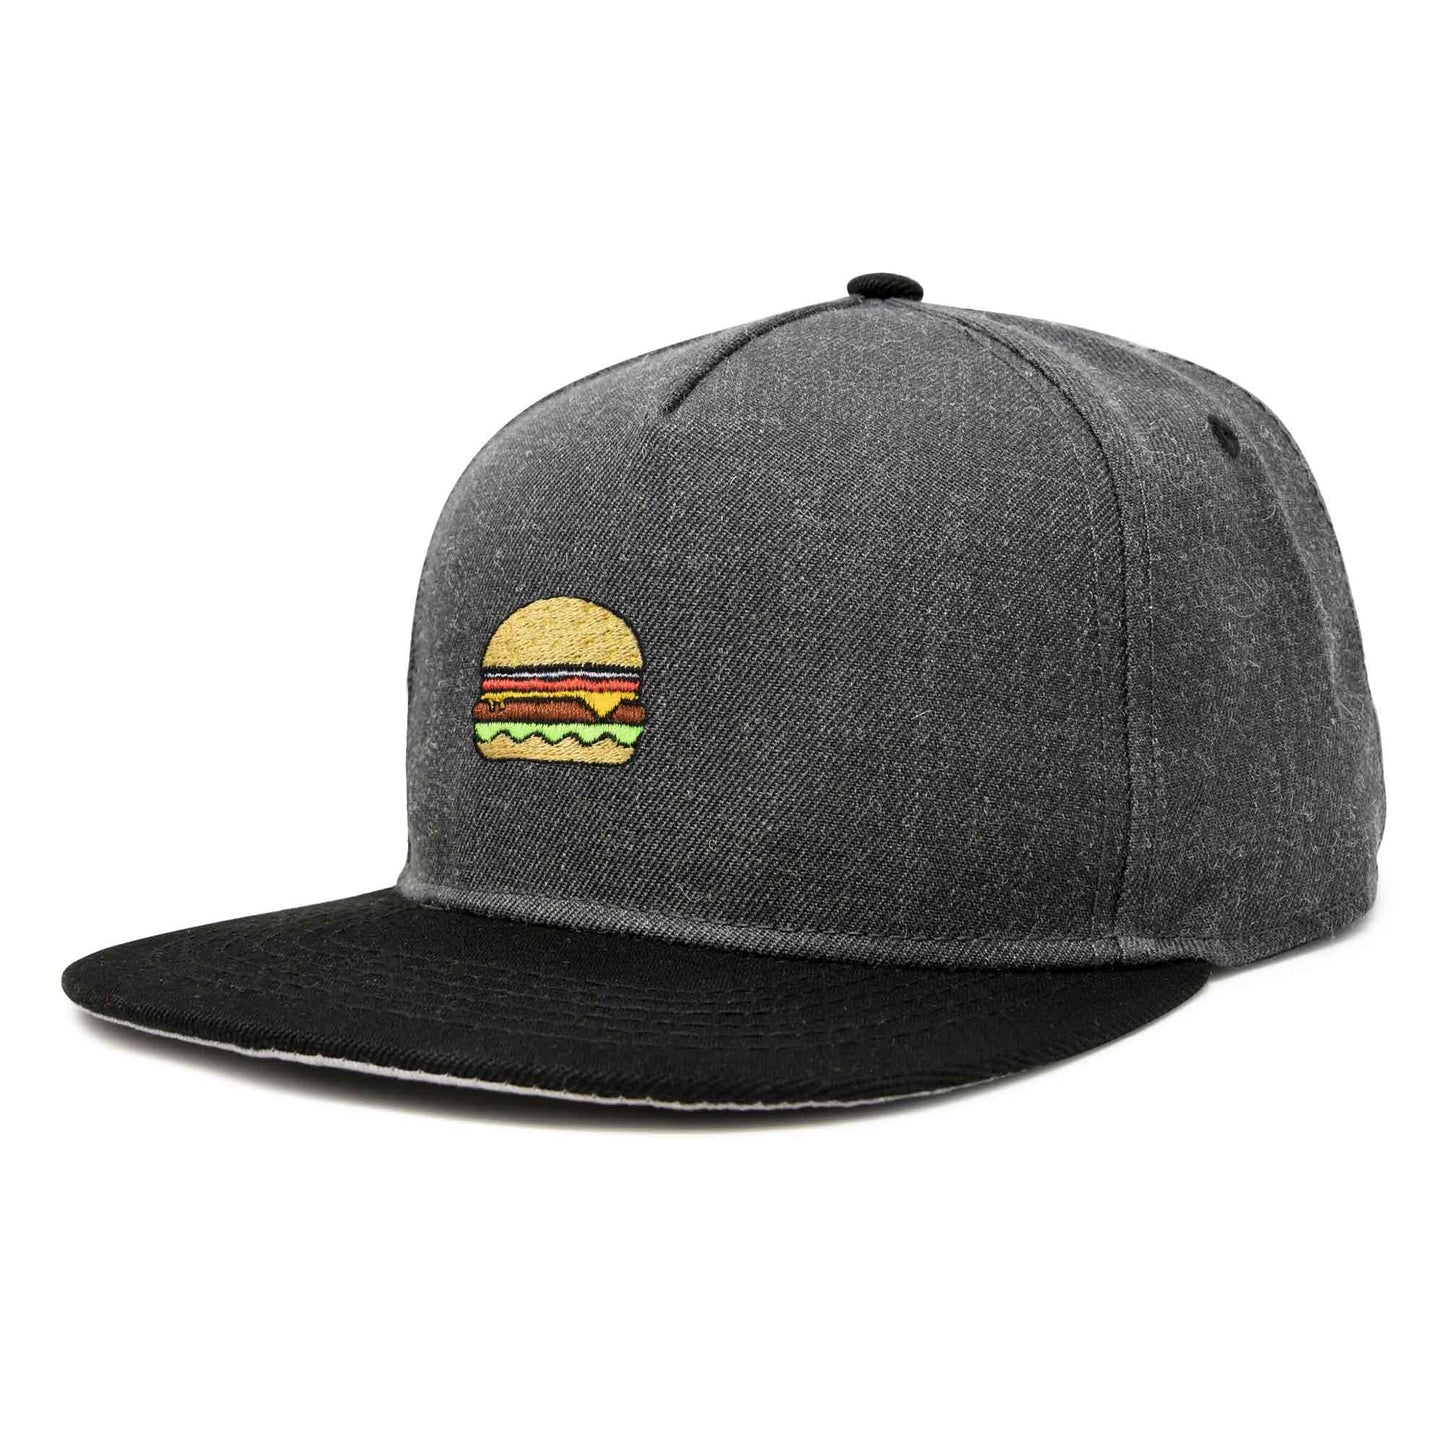 Dalix Cheeseburger Snapback Hat